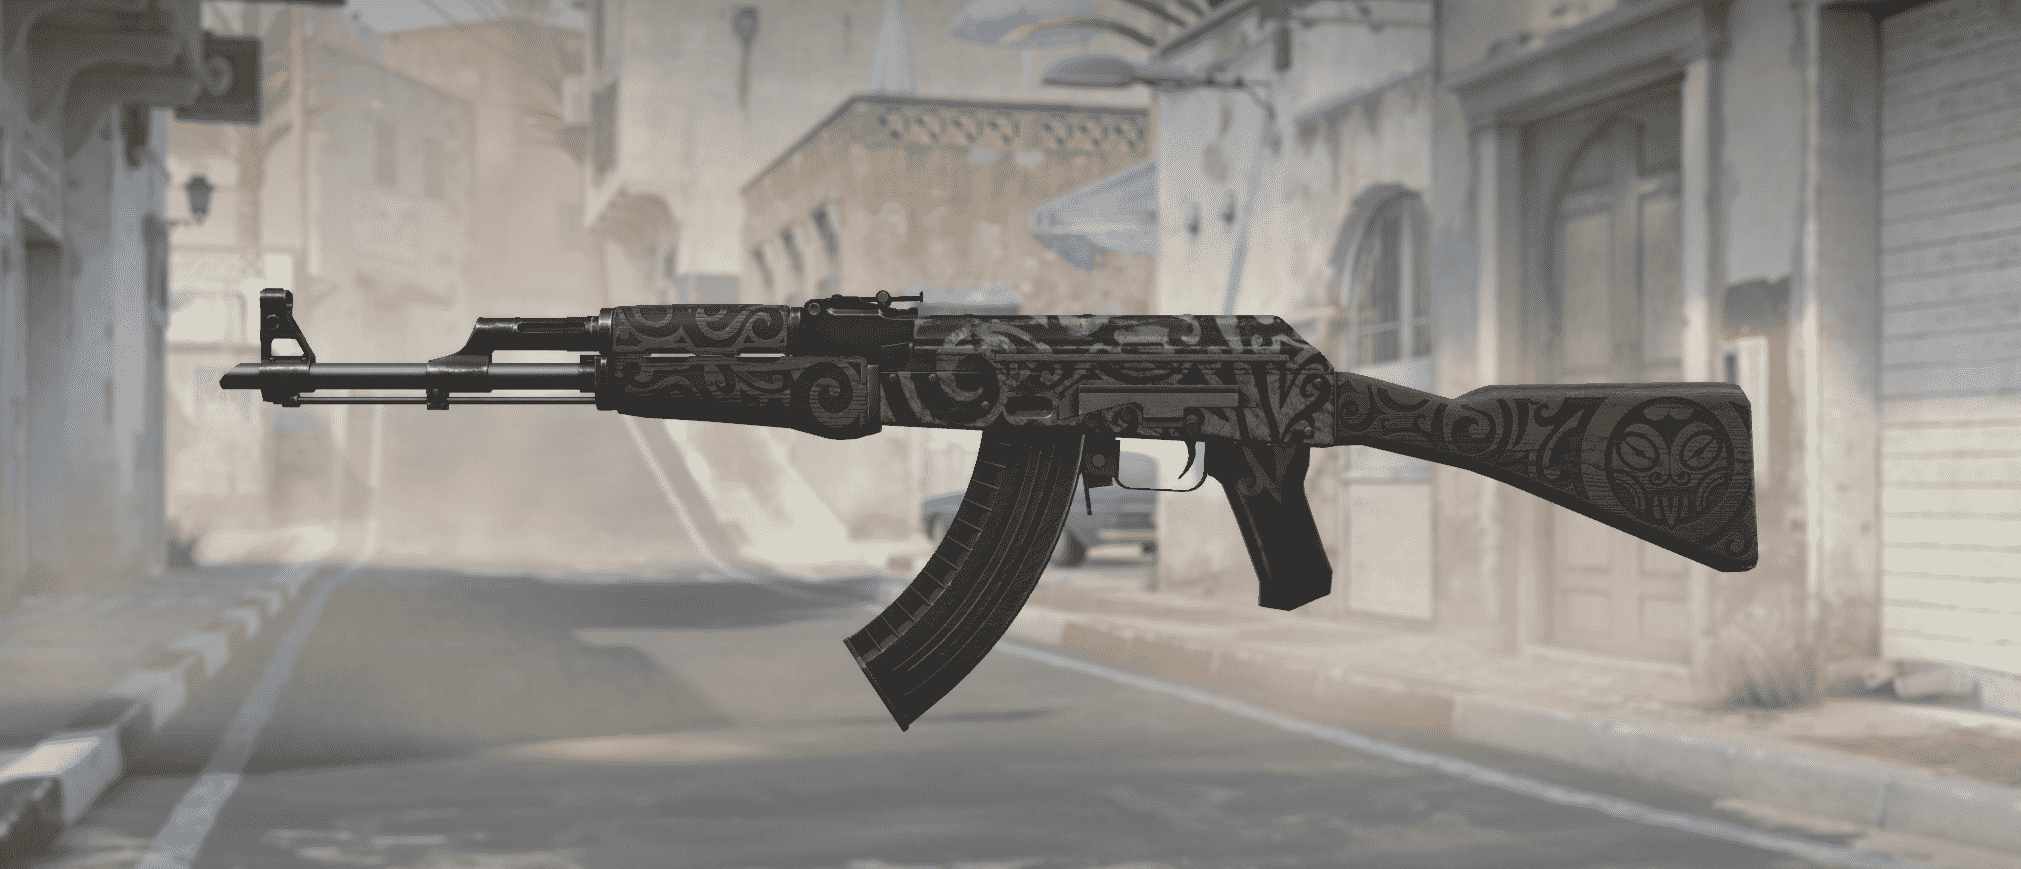 AK-47 desconocido